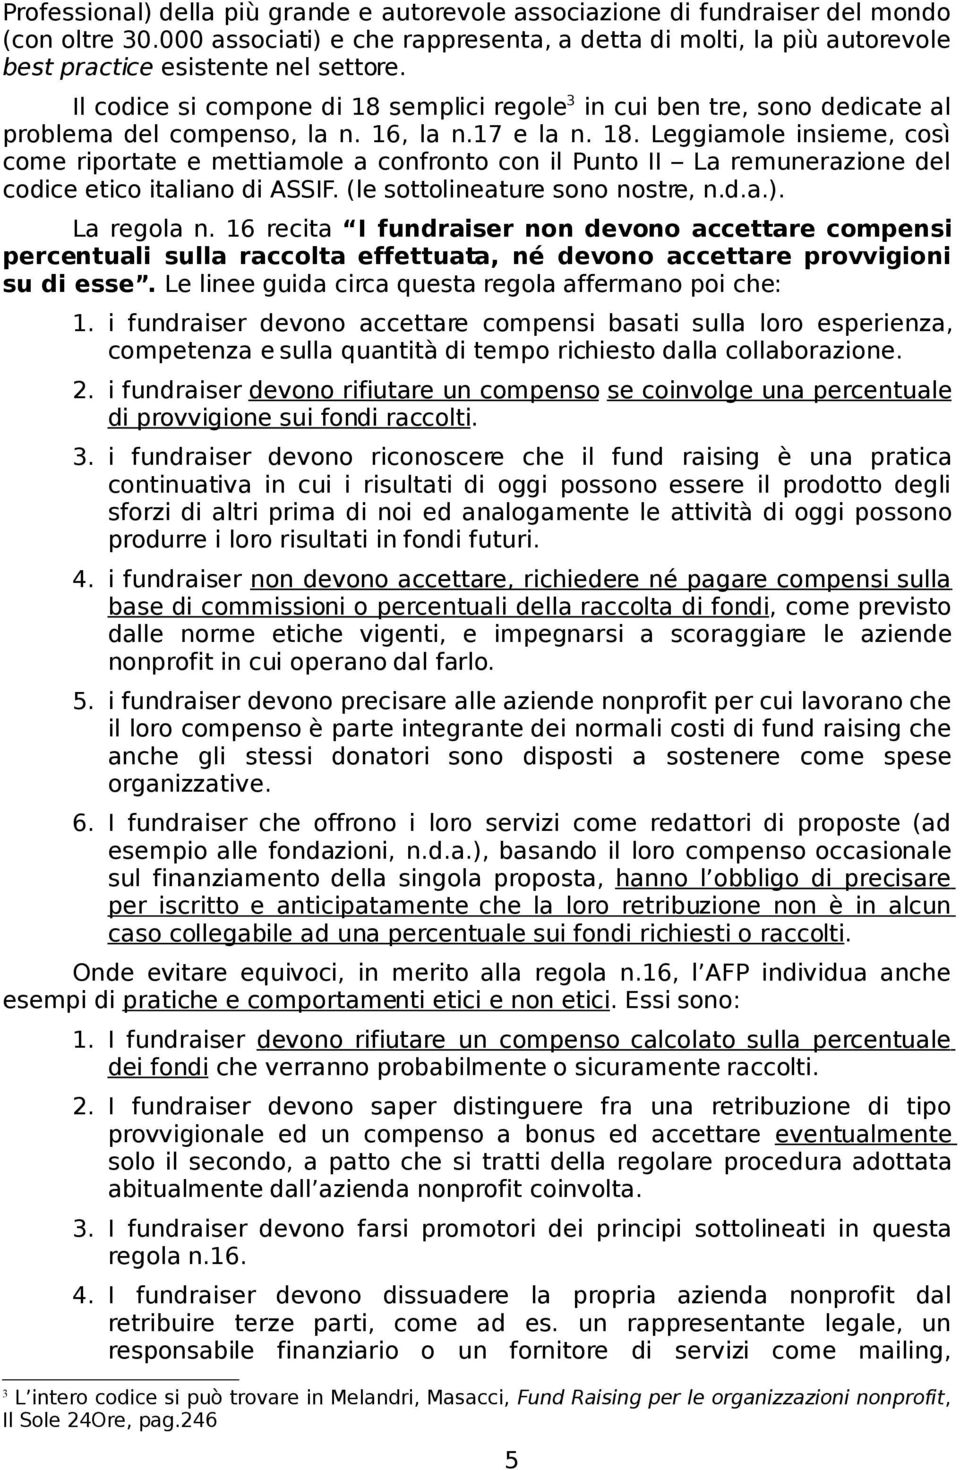 Il codice si compone di 18 semplici regole 3 in cui ben tre, sono dedicate al problema del compenso, la n. 16, la n.17 e la n. 18. Leggiamole insieme, così come riportate e mettiamole a confronto con il Punto II La remunerazione del codice etico italiano di ASSIF.